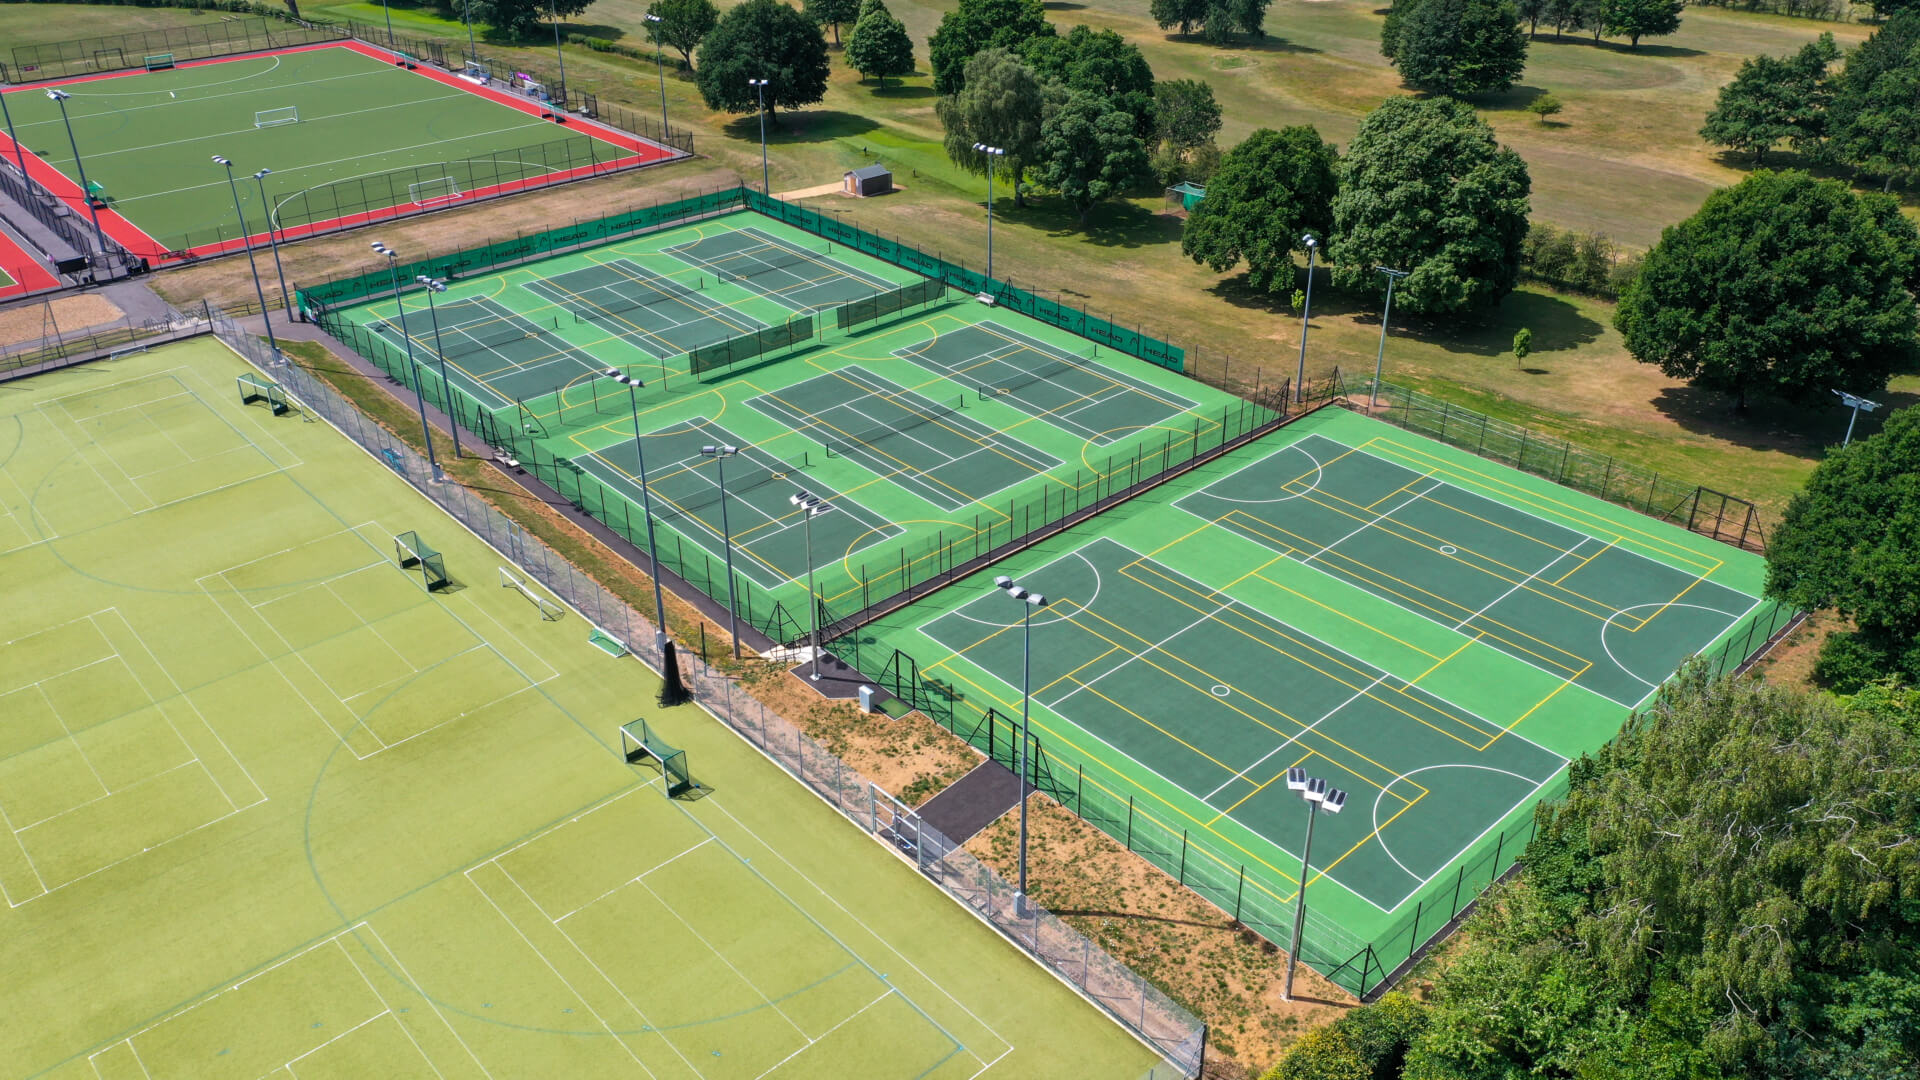 S&C Slatter tennis & netball court construction Charterhouse School